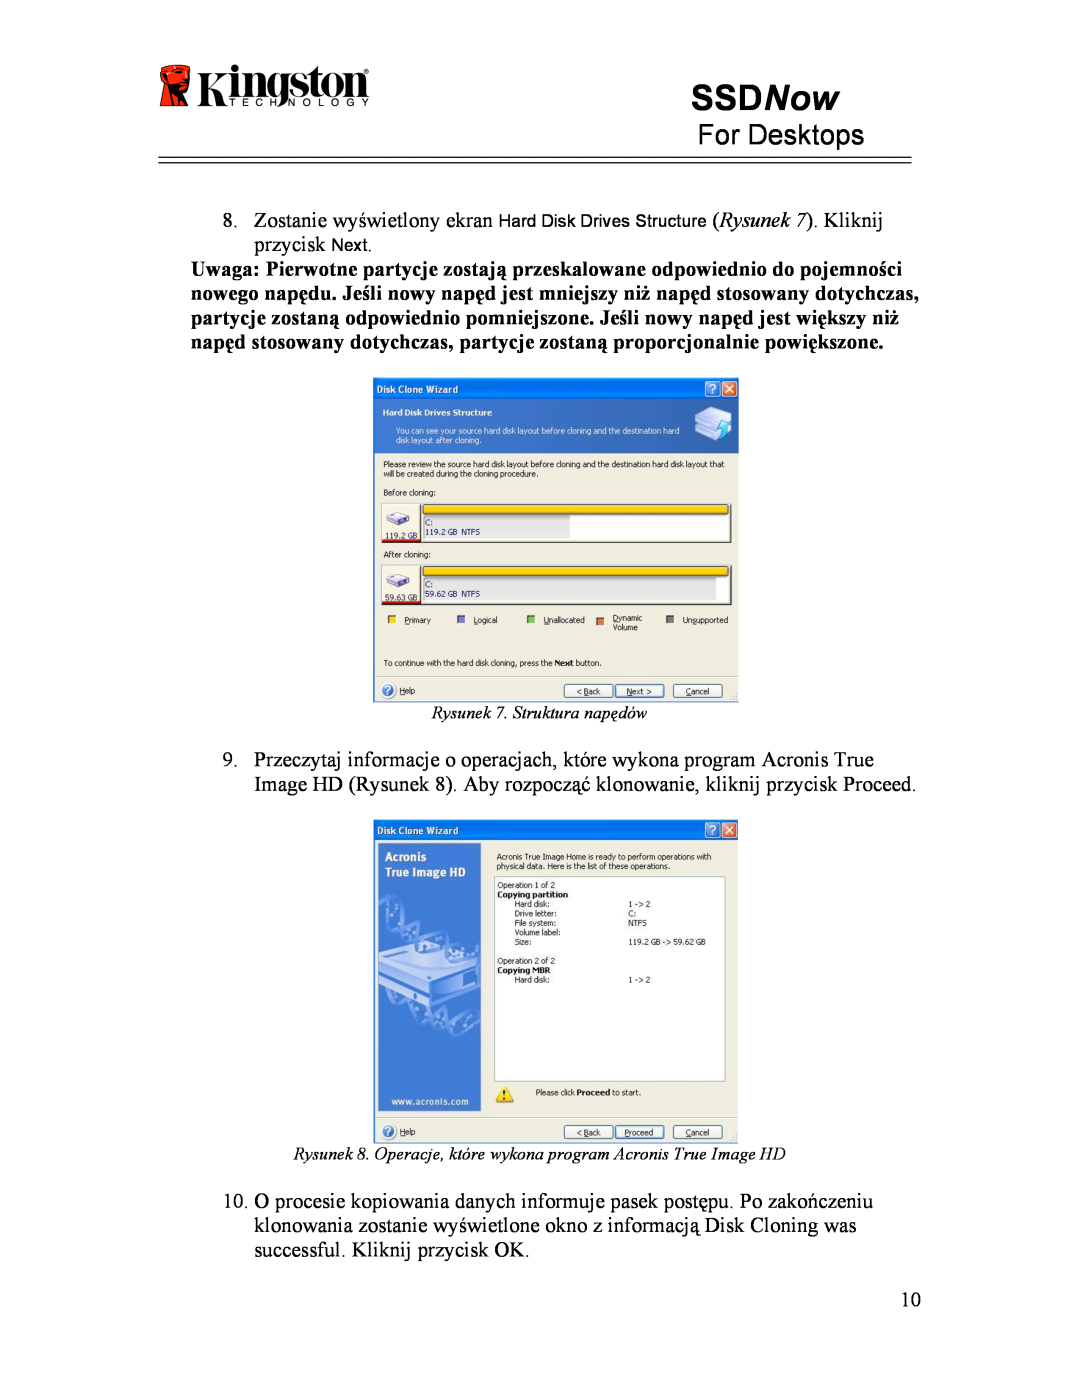 Kingston Technology 07-16-2009 manual SSDNow, For Desktops, Rysunek 7. Struktura napędów 